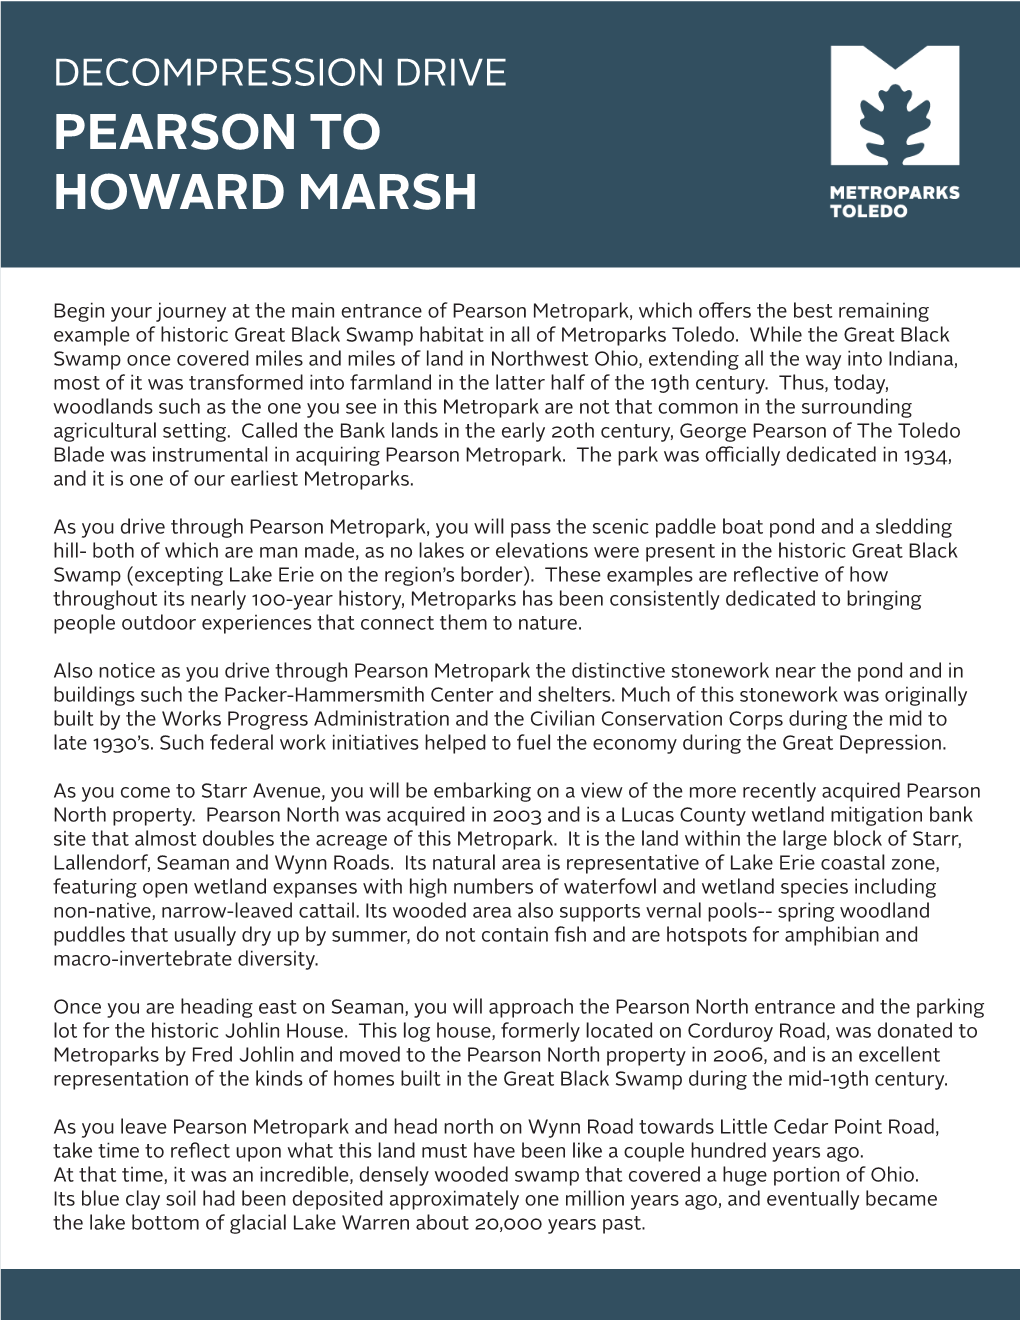 Pearson to Howard Marsh